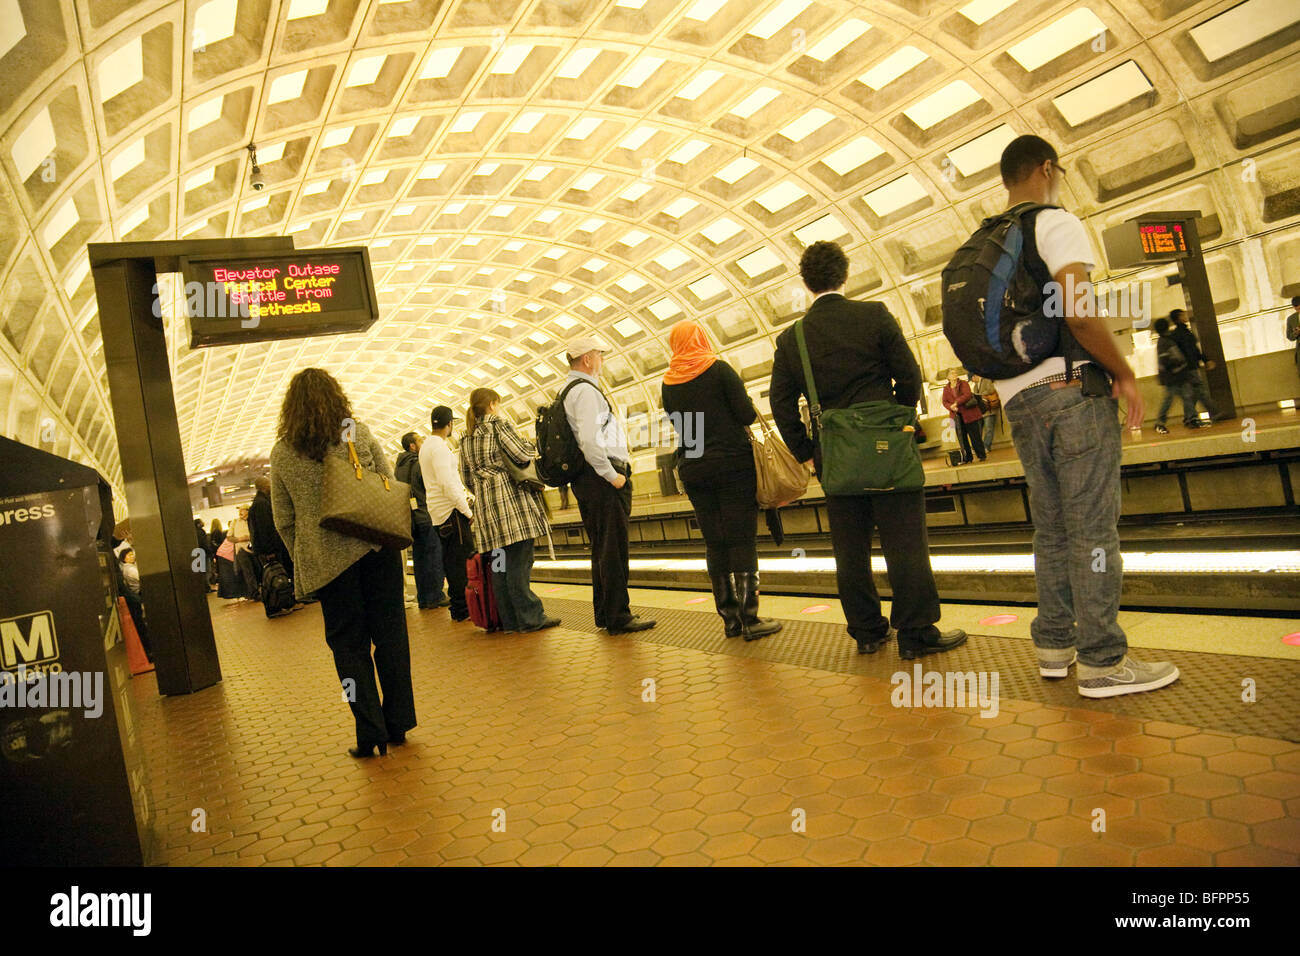 Persone in attesa sulla piattaforma per un treno, il metrorail o metro del sistema ferroviario, Washington DC, Stati Uniti d'America Foto Stock